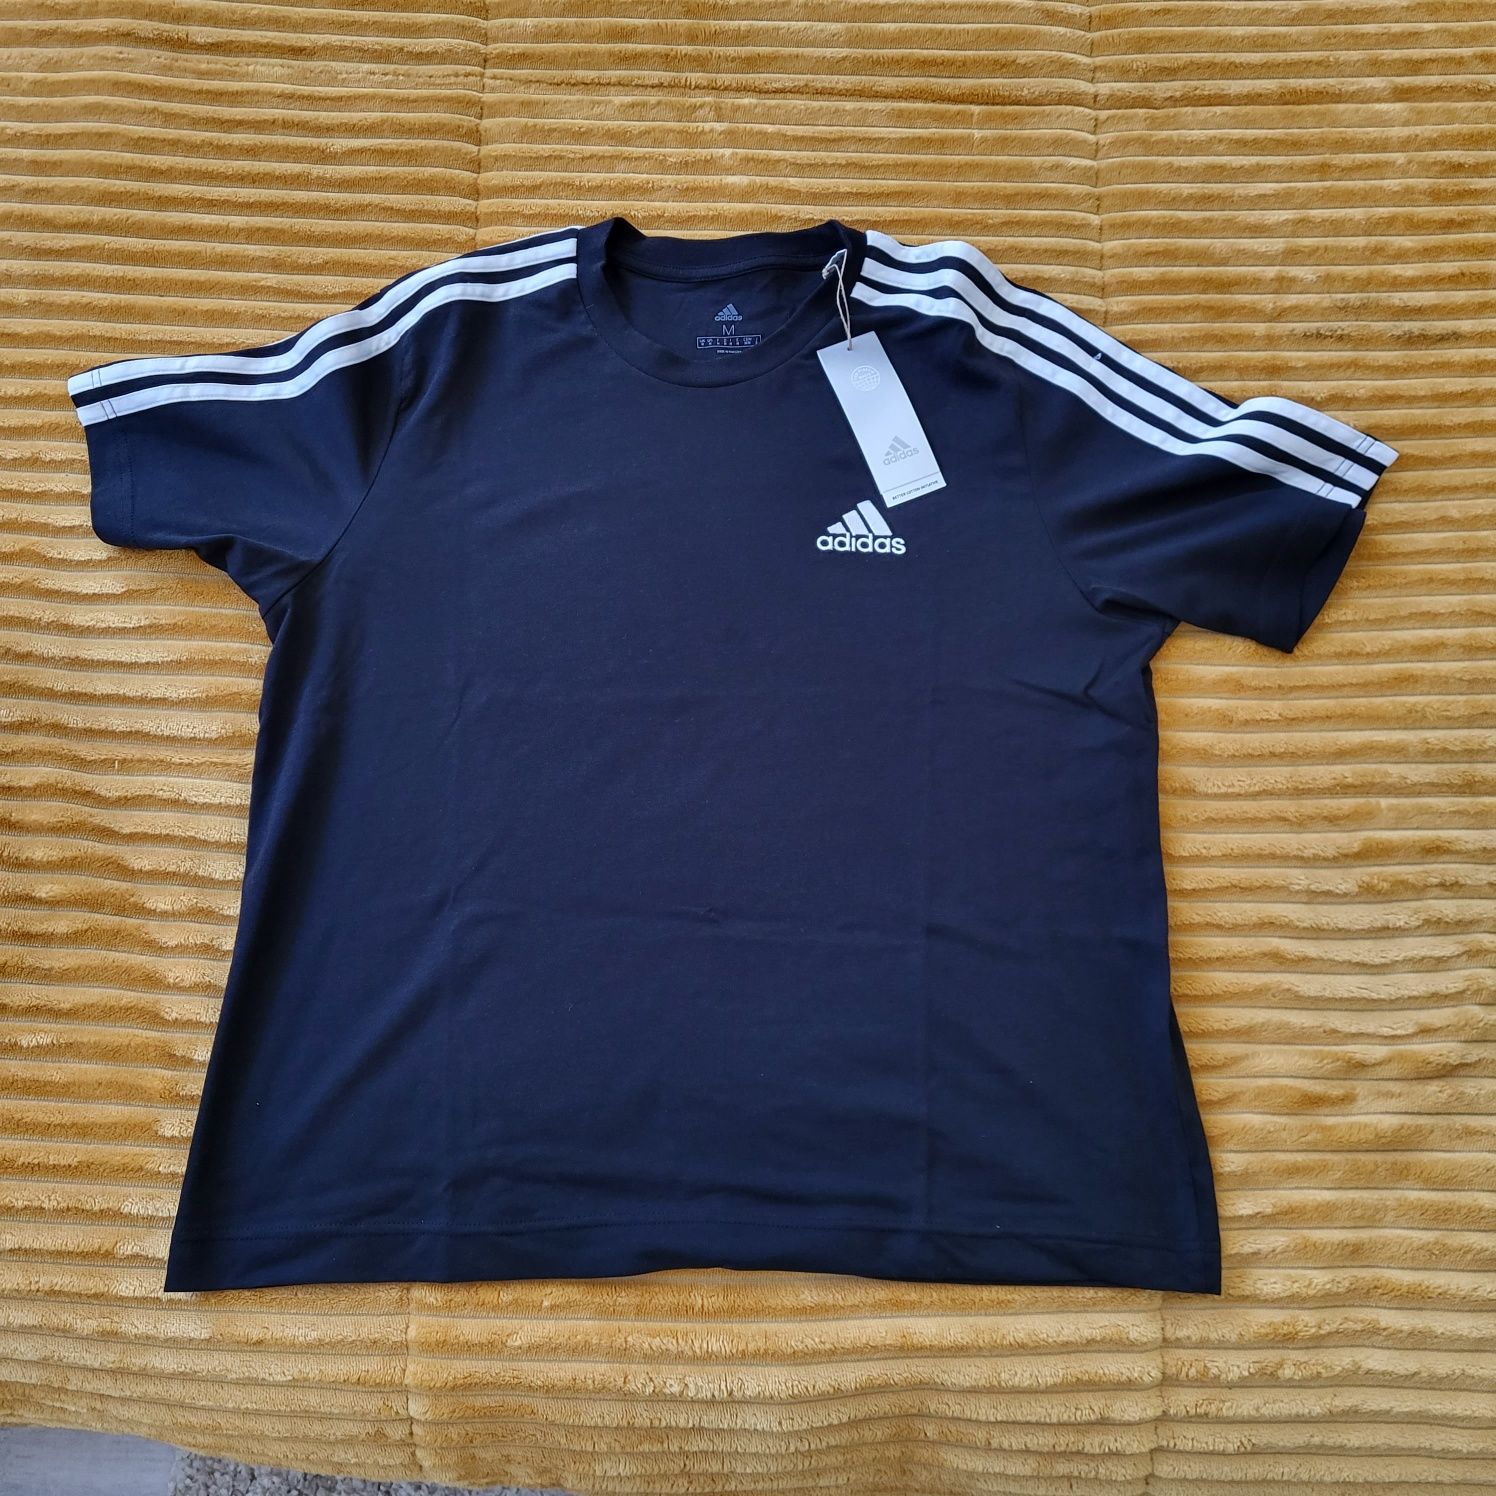 T-Shirt da Adidas nova Original